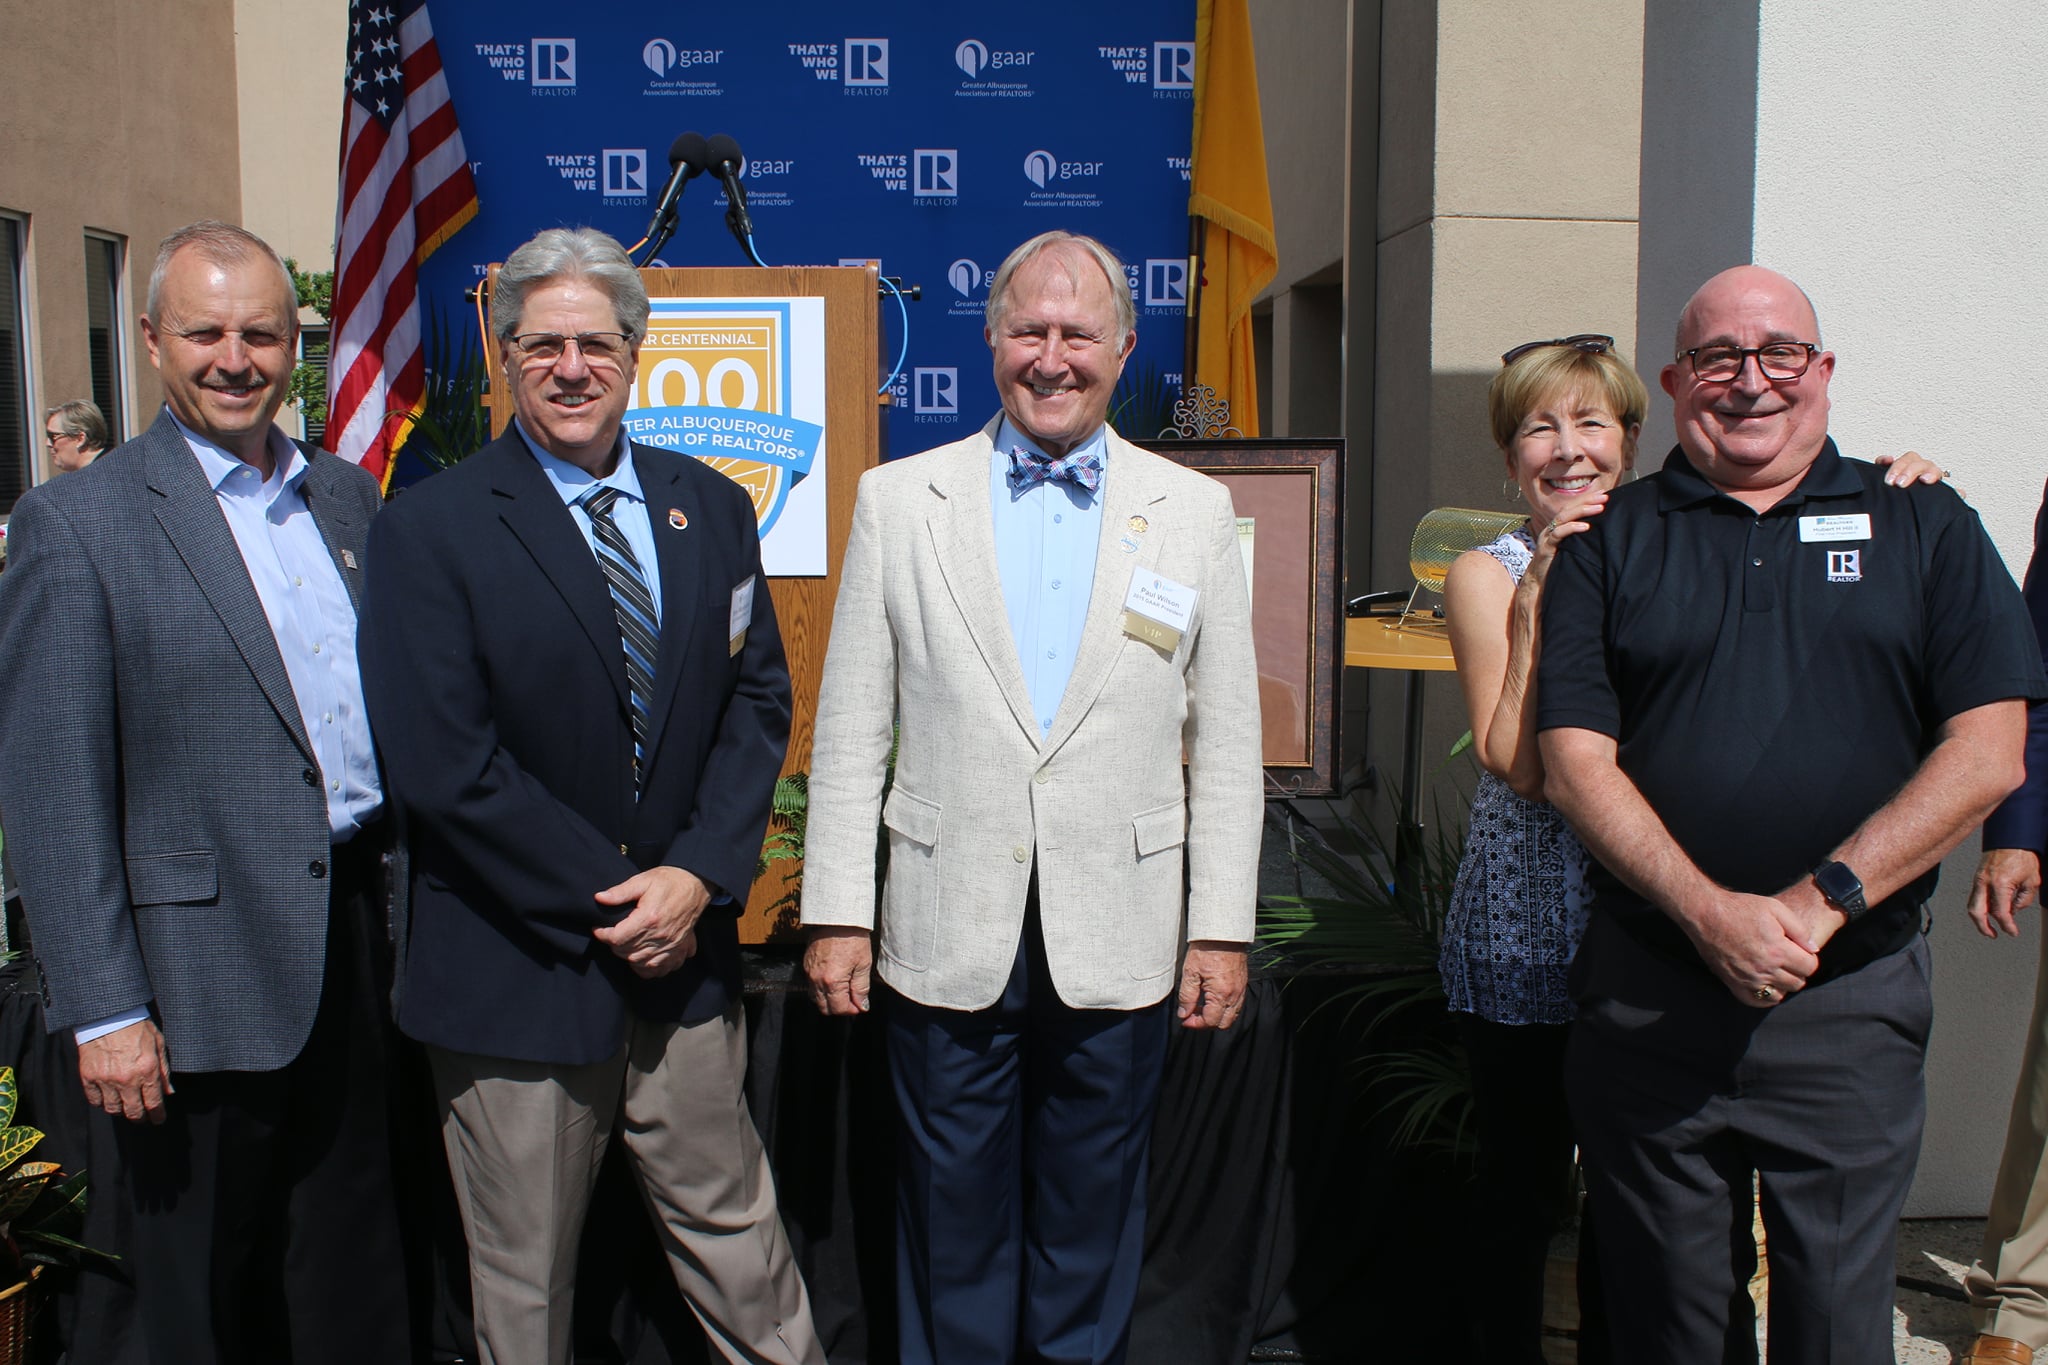 GAAR Celebrates 100 Year Anniversary with Mayor Tim Keller & City Leaders